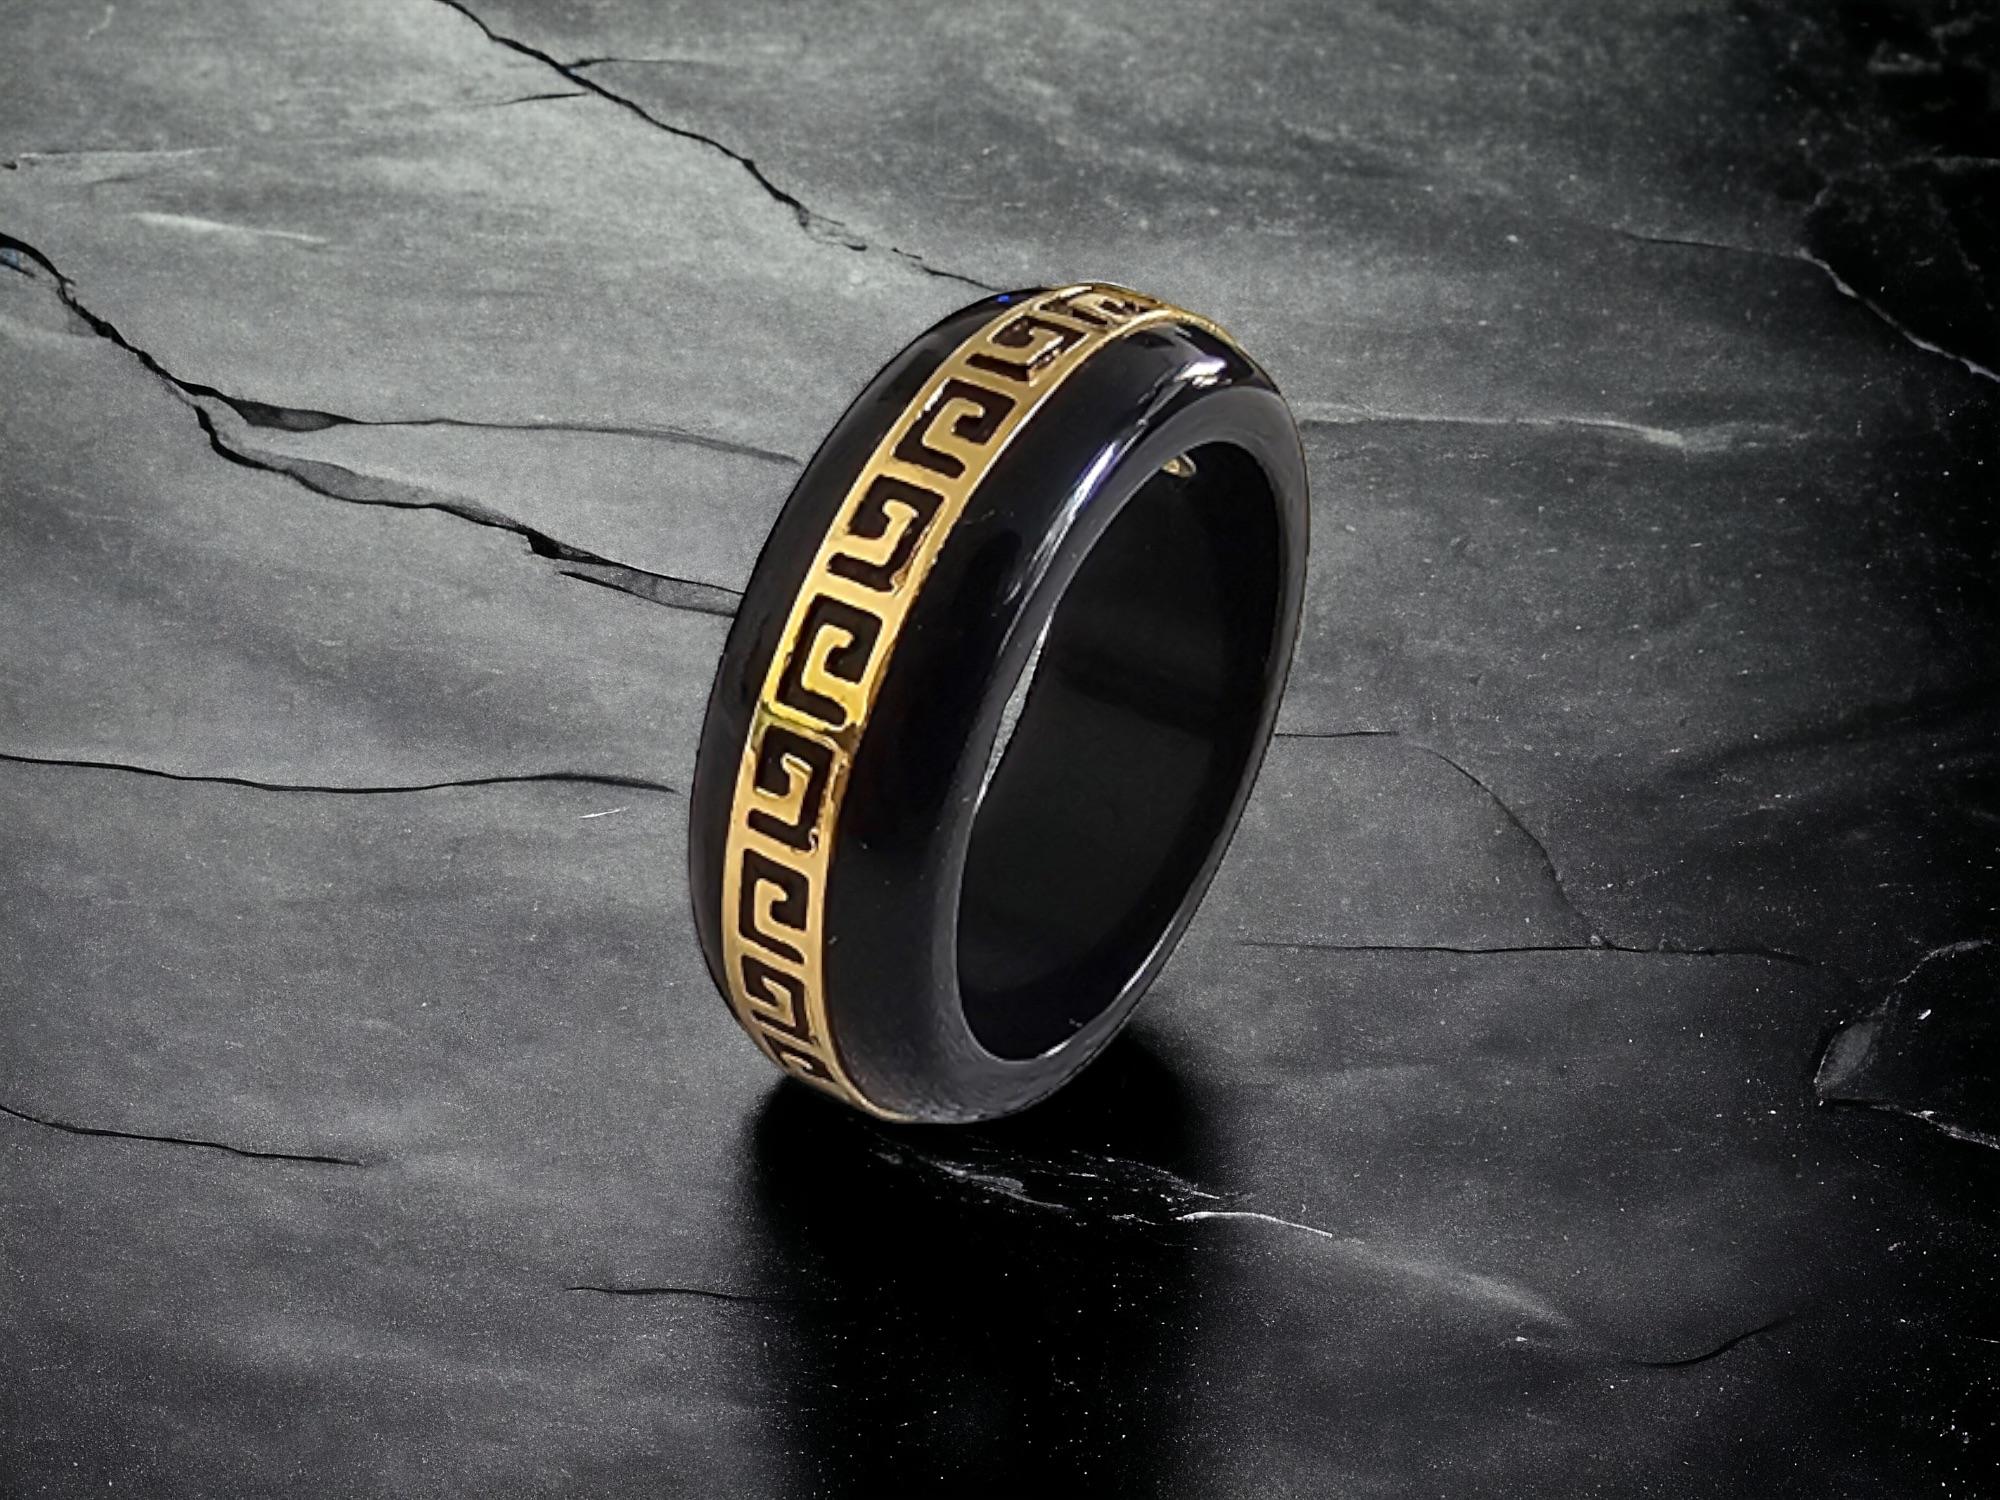 Black Onyx Band Ring mit massivem 14K Gelbgold (Hallmark Stamped) für Männer und Frauen (unisex). 

Das Unendlichkeitsband eignet sich perfekt für legere und formelle Anlässe und lässt sich leicht aufpeppen. 

Die 